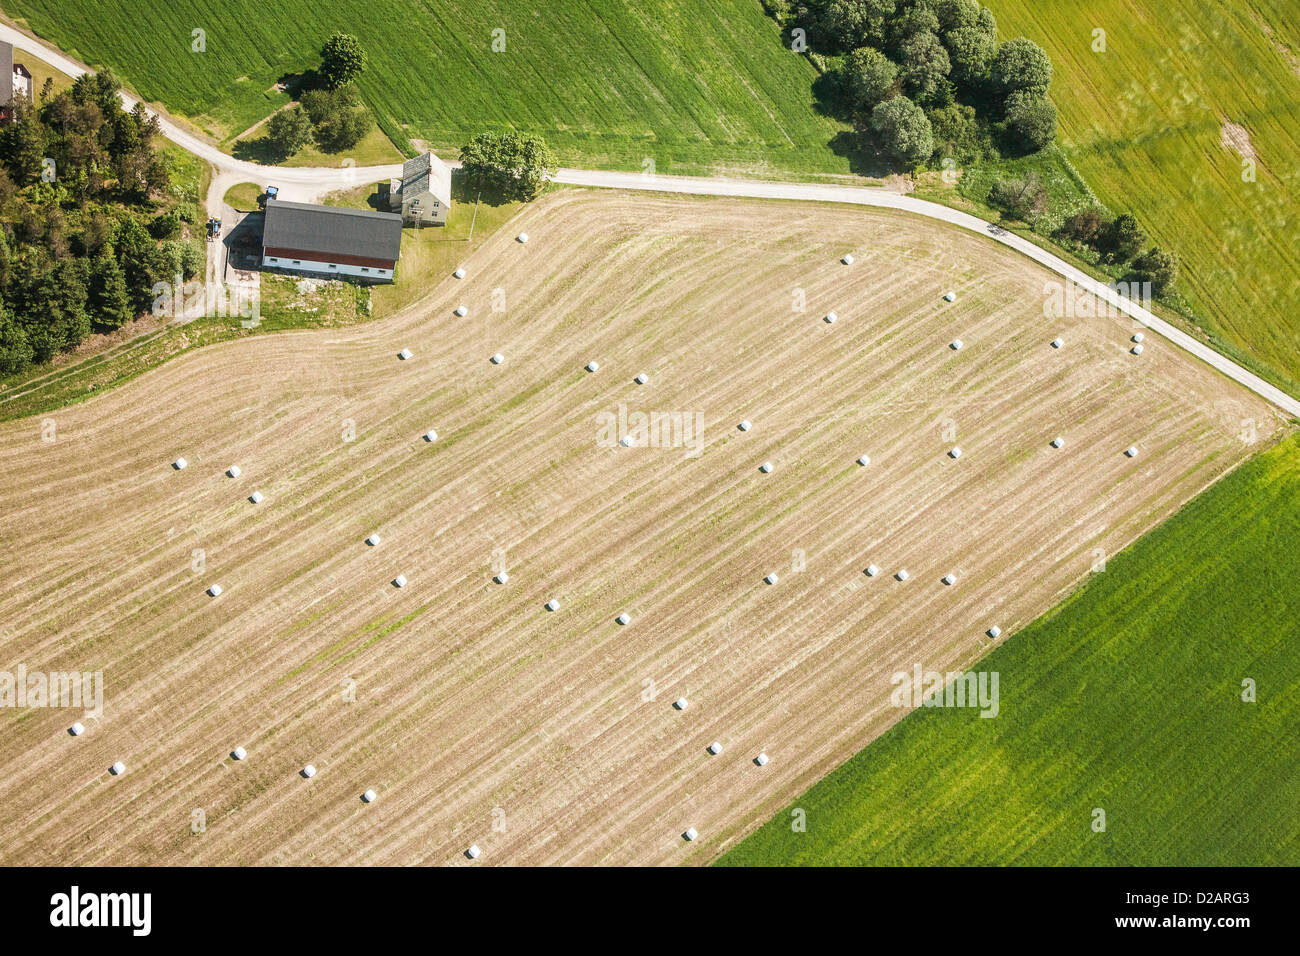 Vue aérienne de terres agricoles en milieu rural Banque D'Images